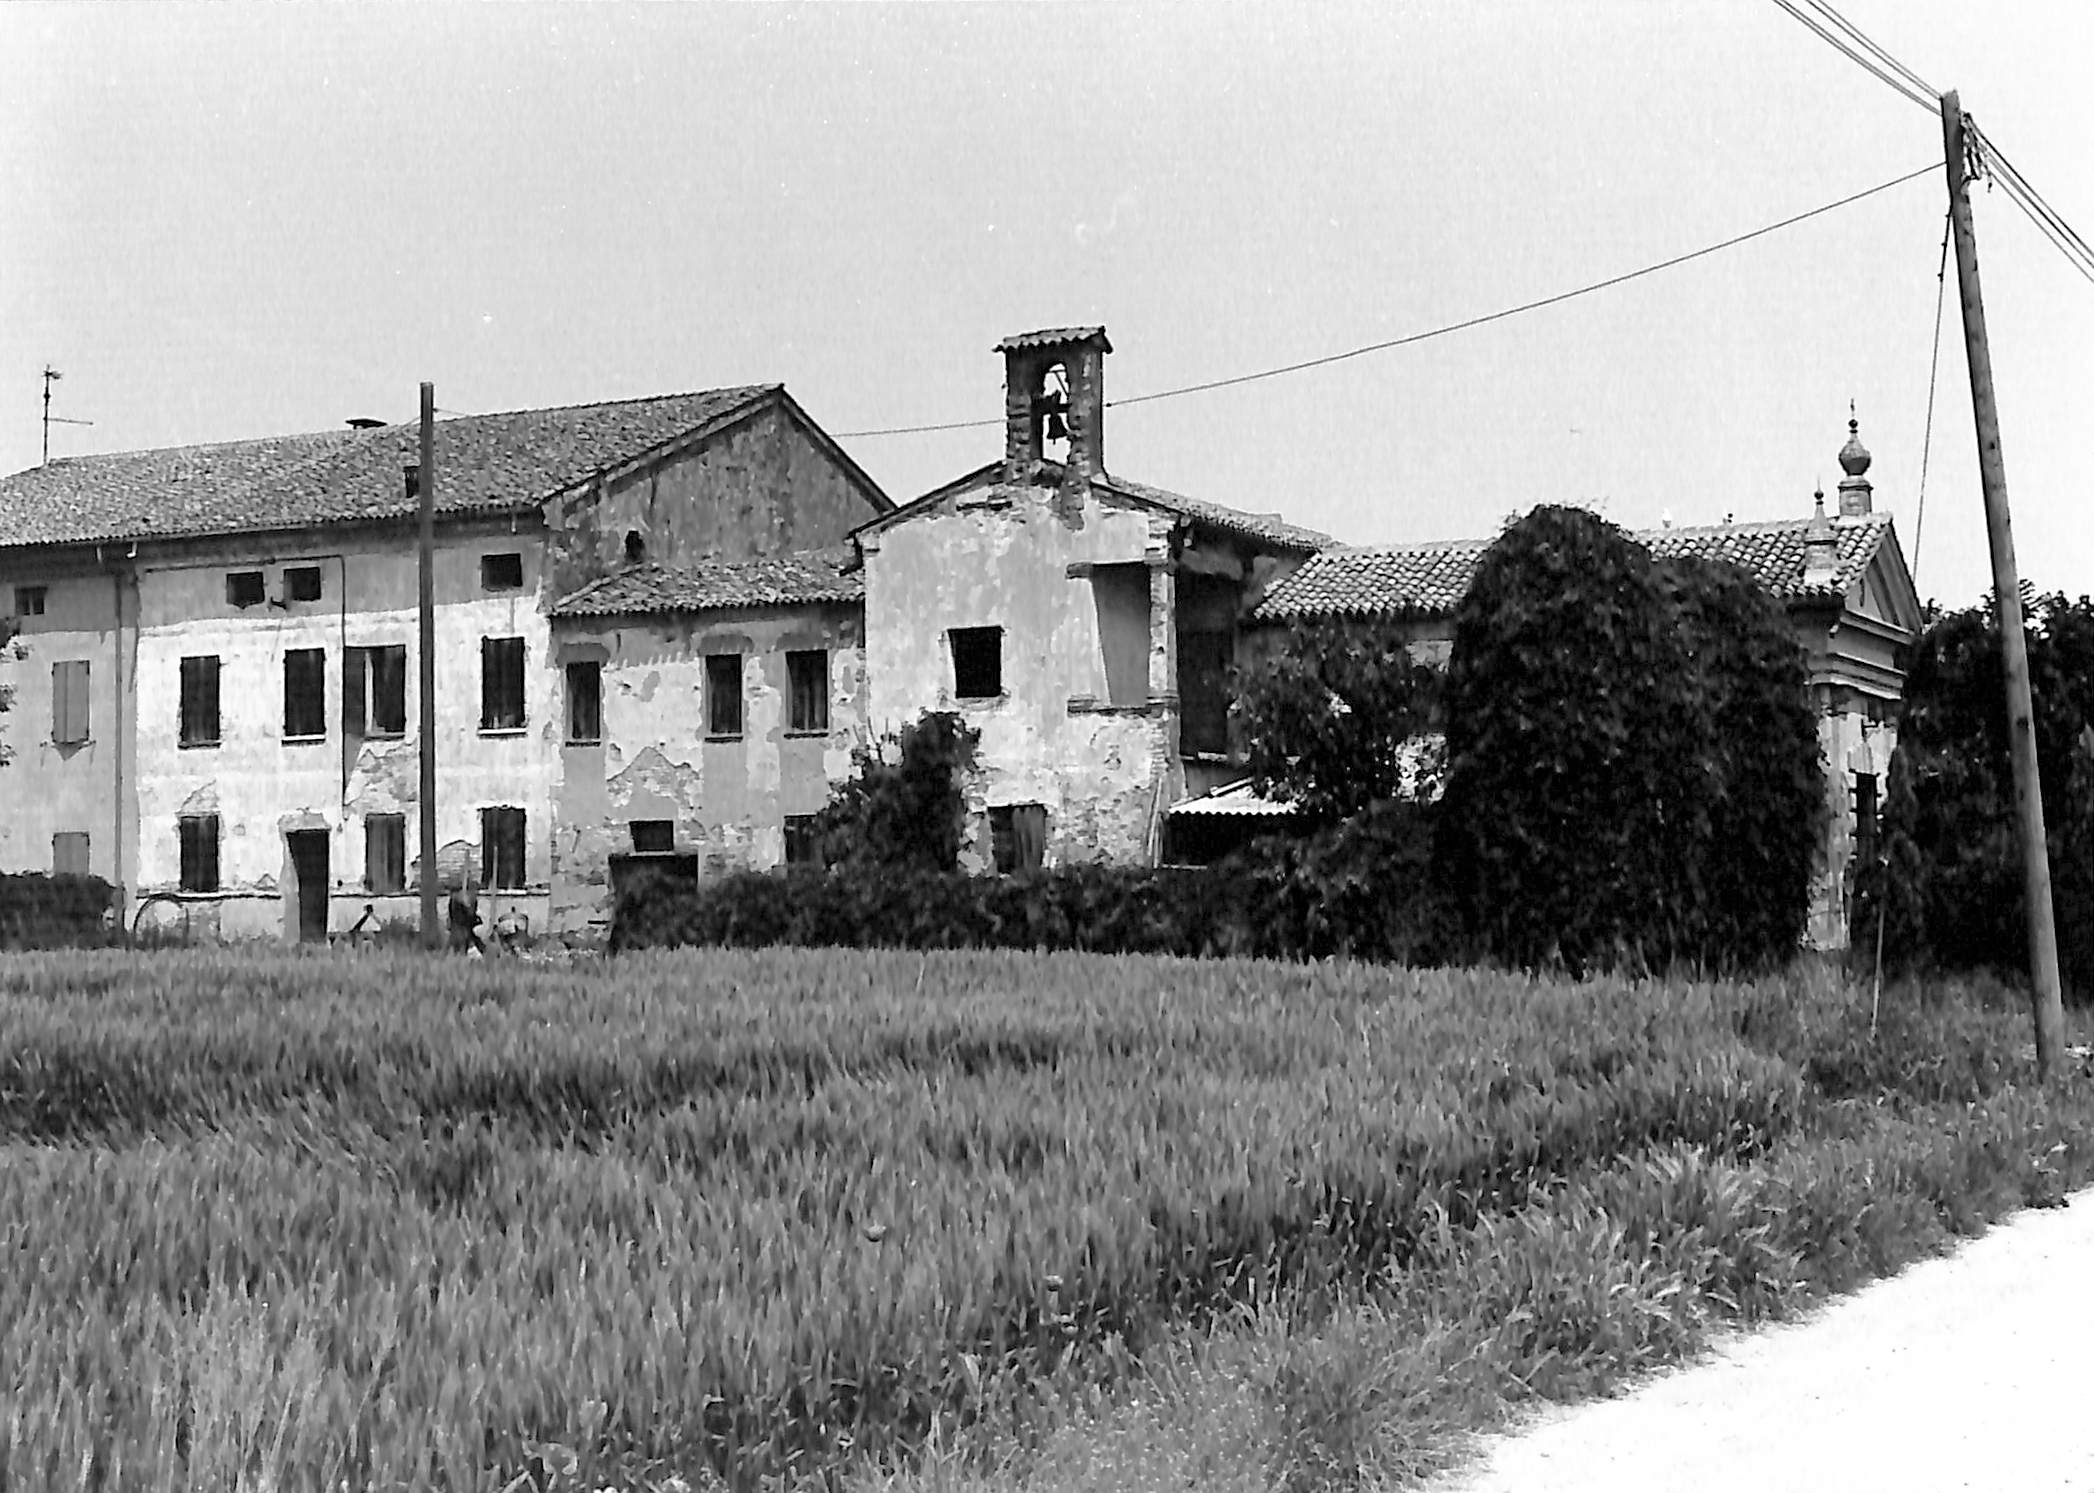 Corte Avanzo (corte, rurale) - Salara (RO)  (XVII)